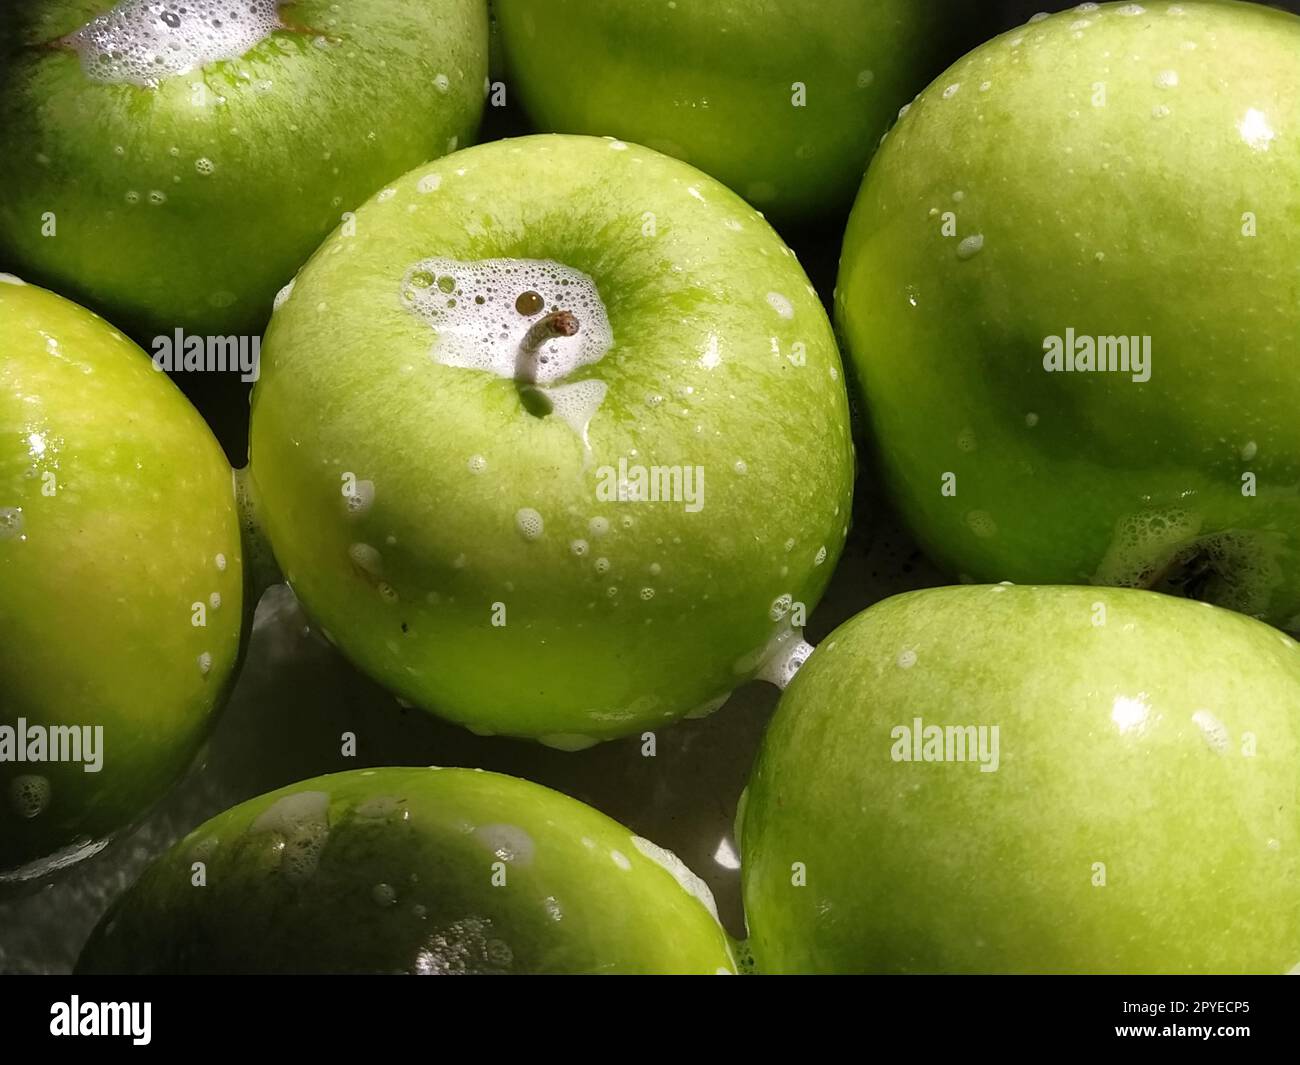 Grüne Äpfel, eingeseift und zum Abspülen mit Wasser bereit. Gute Hygiene beim Essen Stockfoto